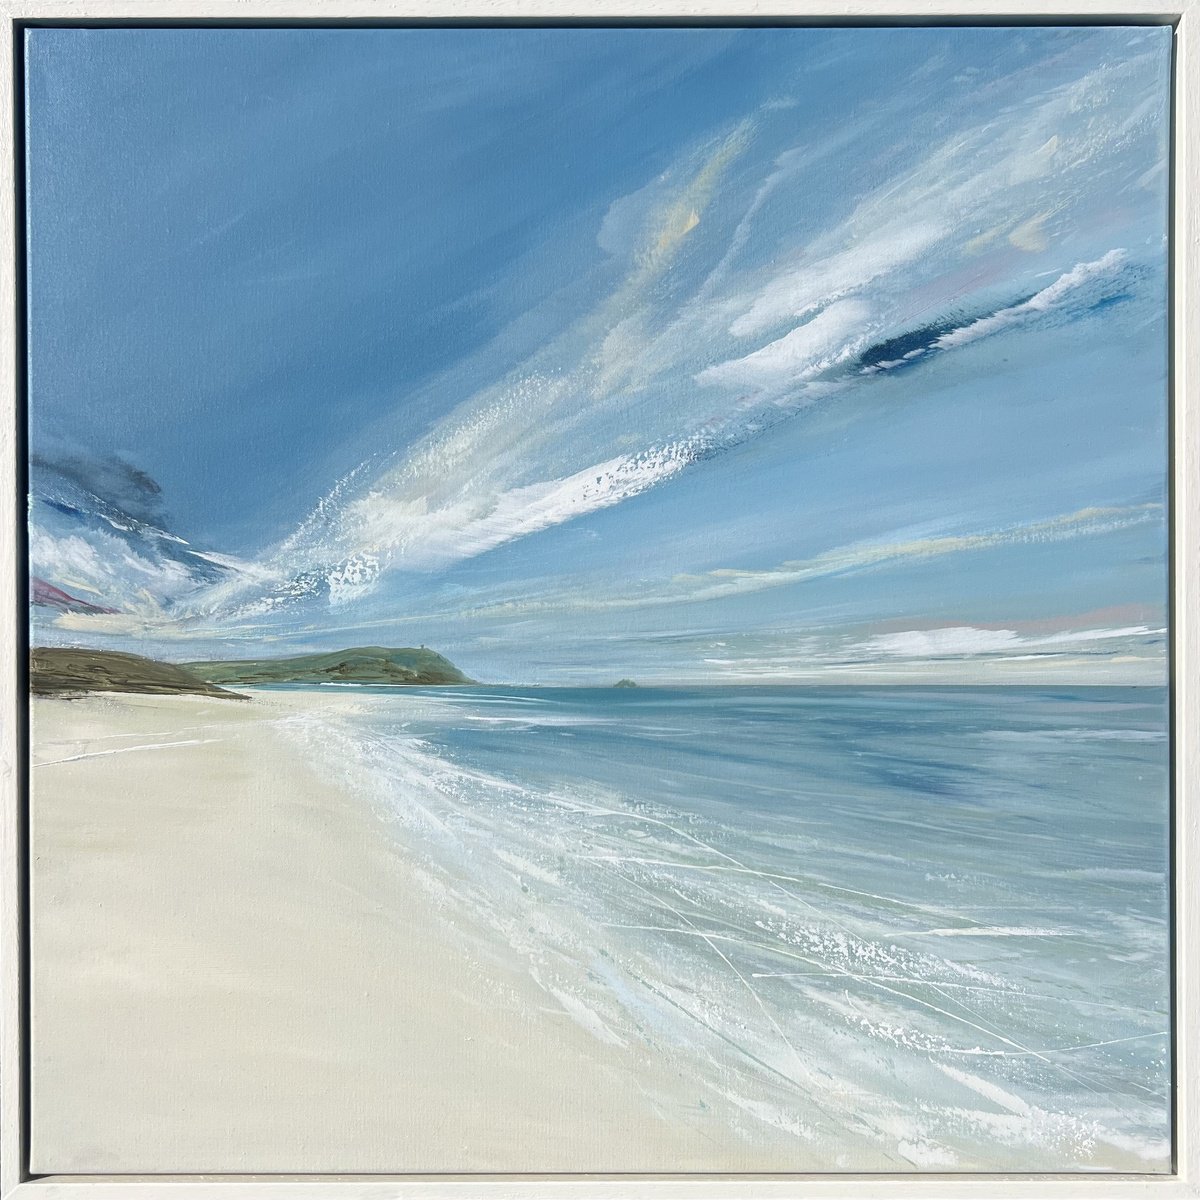 Polzeath Beach Looking West by Jane Skingley